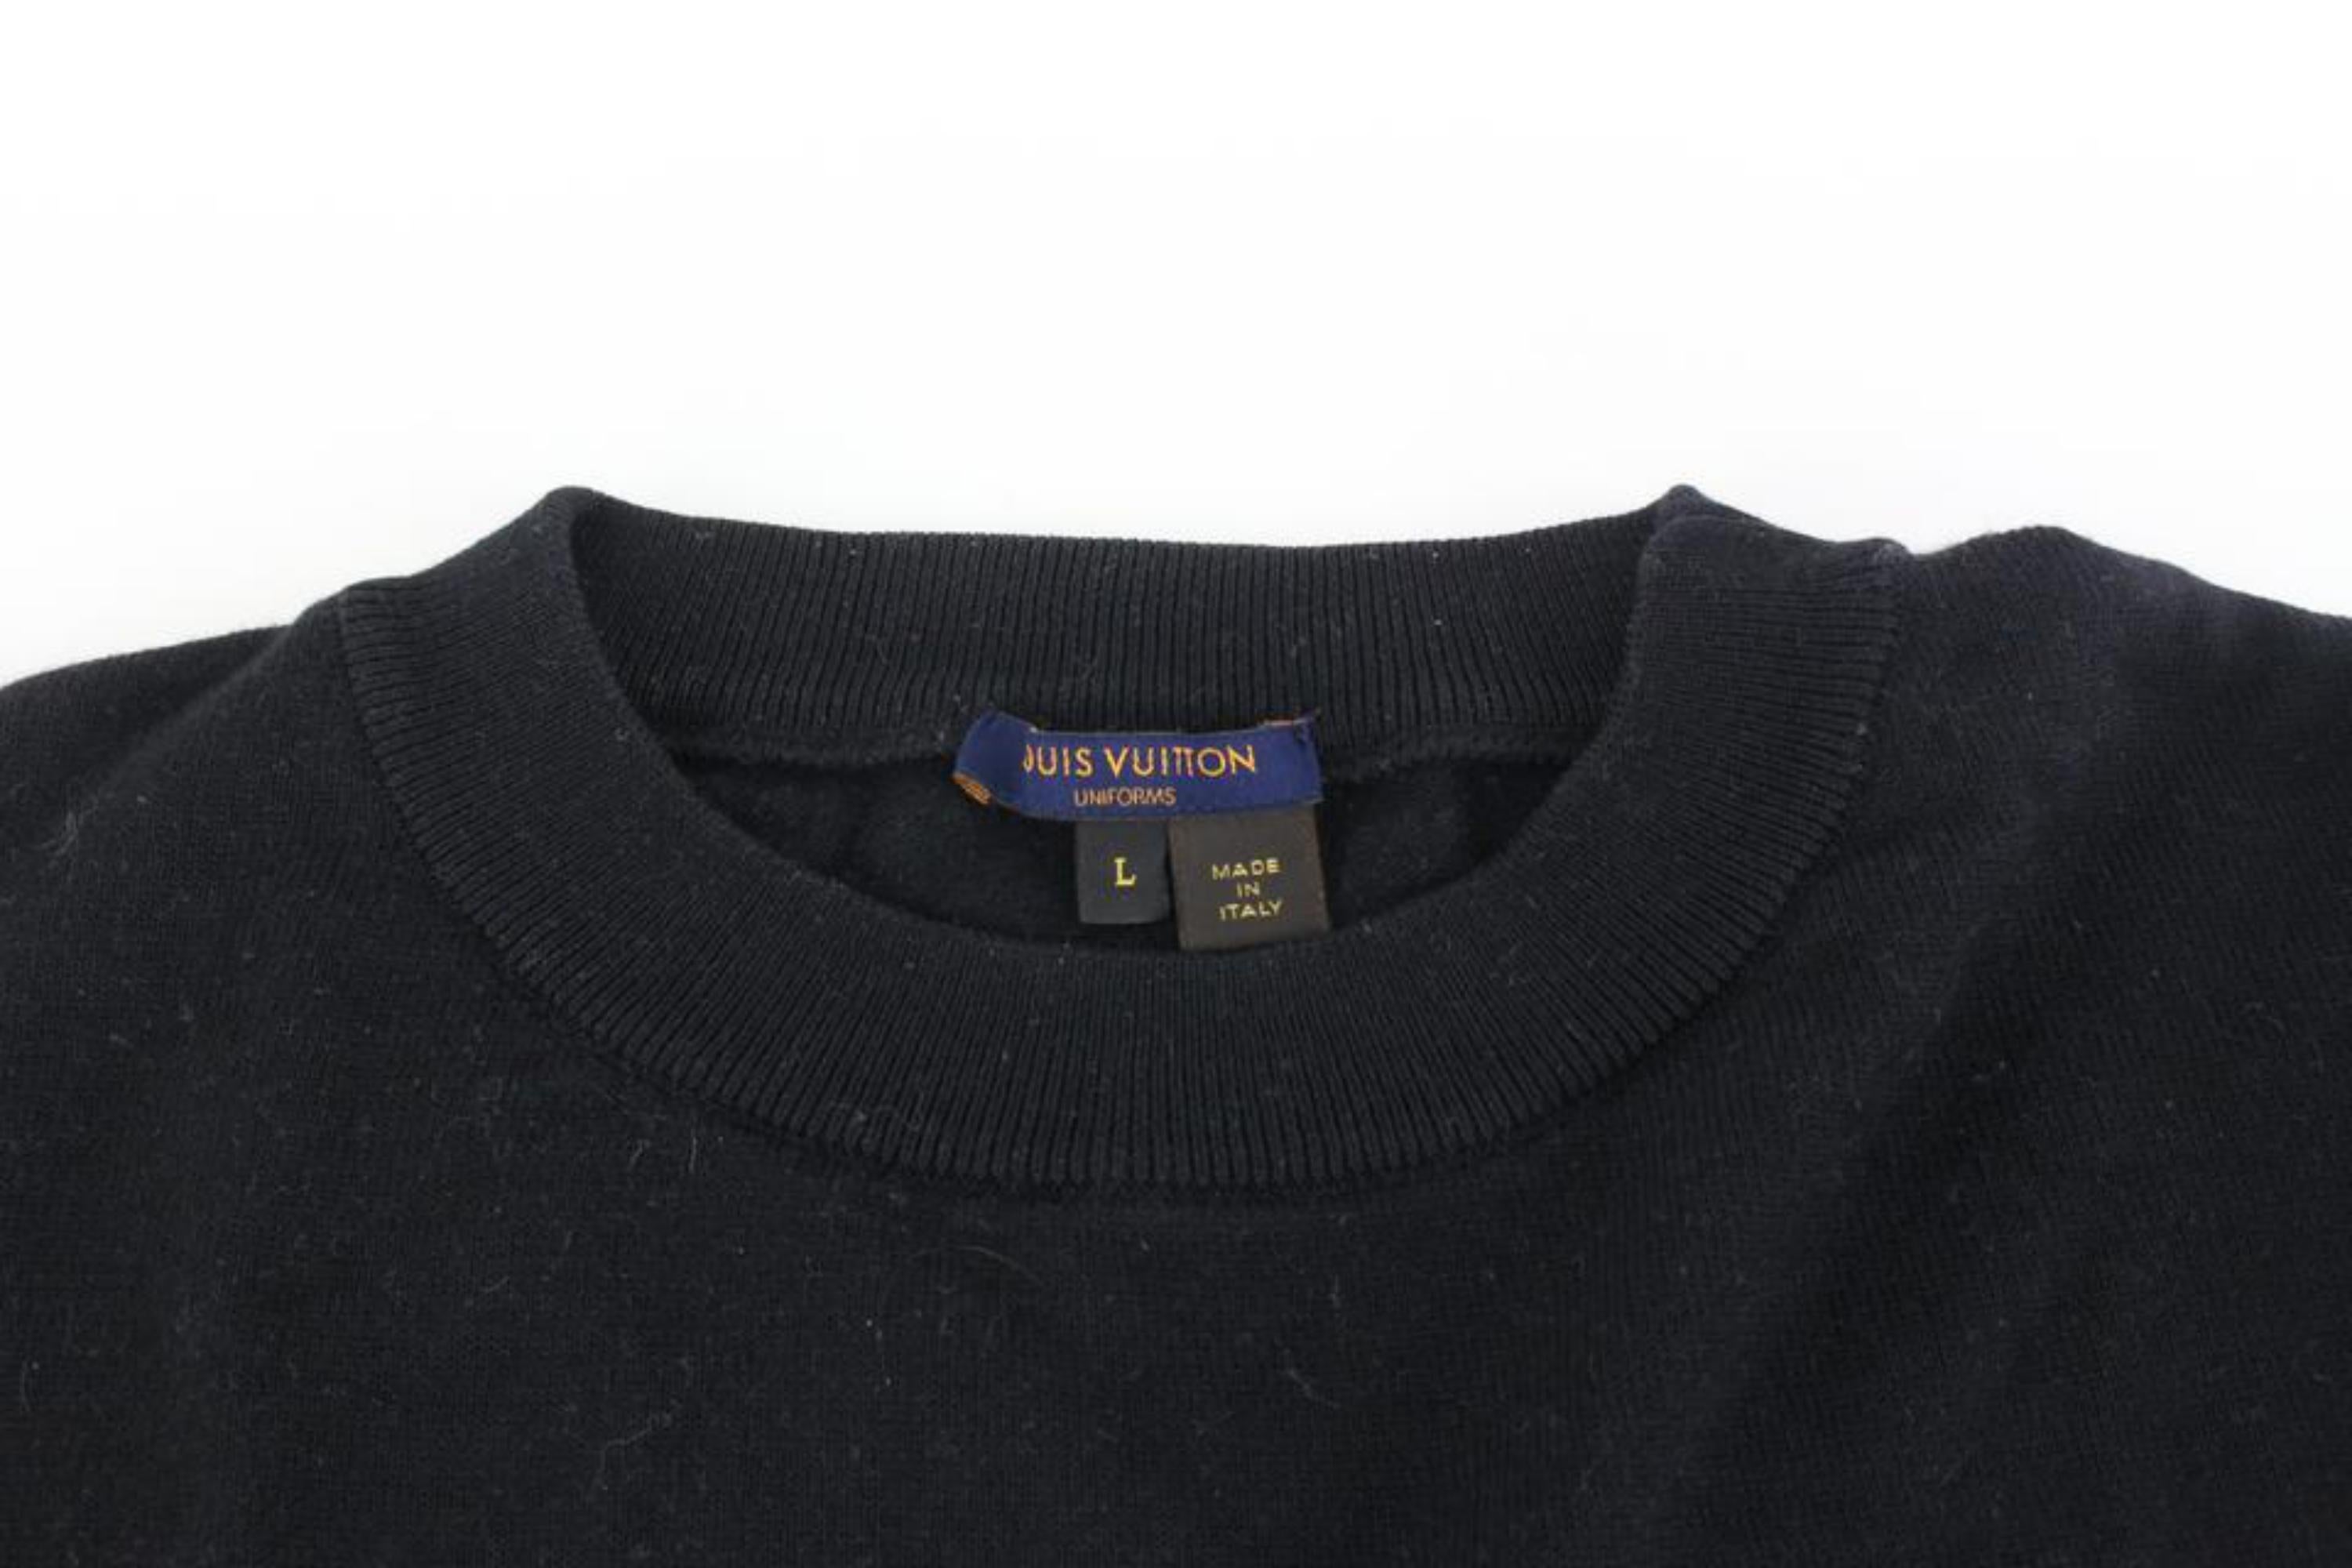 Louis Vuitton Men's Large Virgil Abloh Black Upsidedown Label Sweater 23lv617s 6